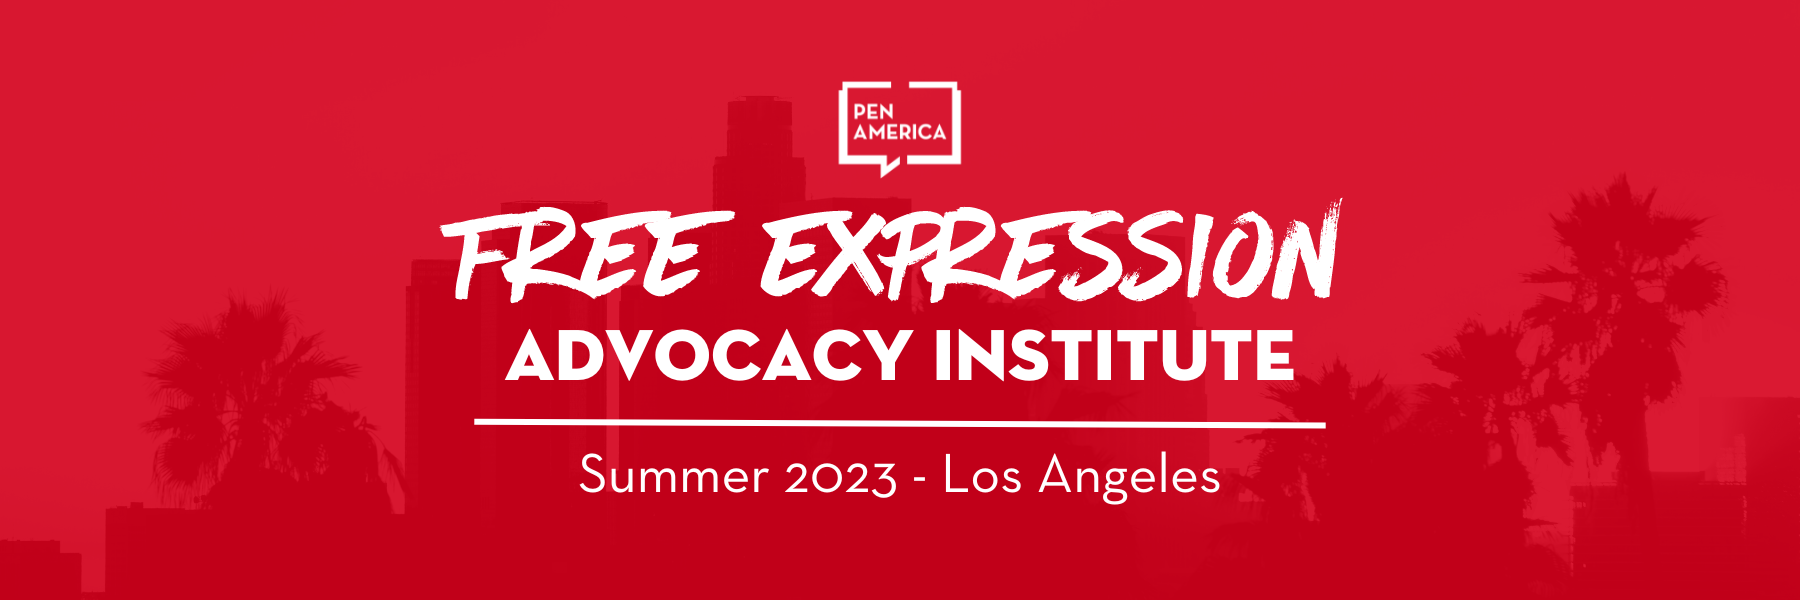 PEN America Free Expression Advocacy Institute - Summer 2023 - LA